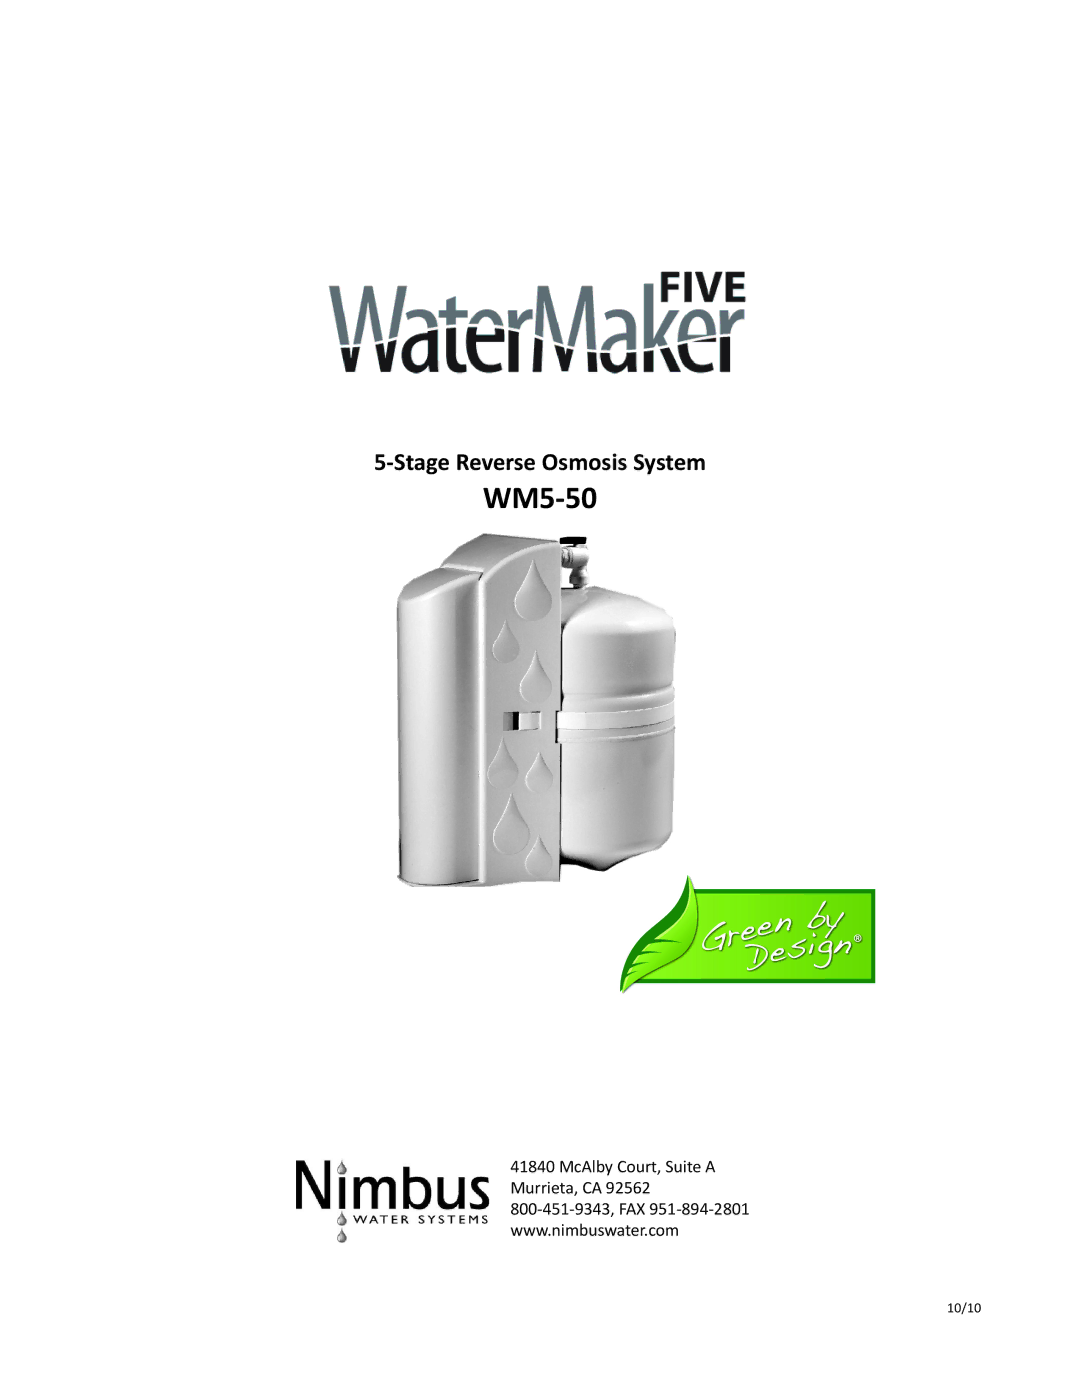 Nimbus Water Systems WM5-50 manual 